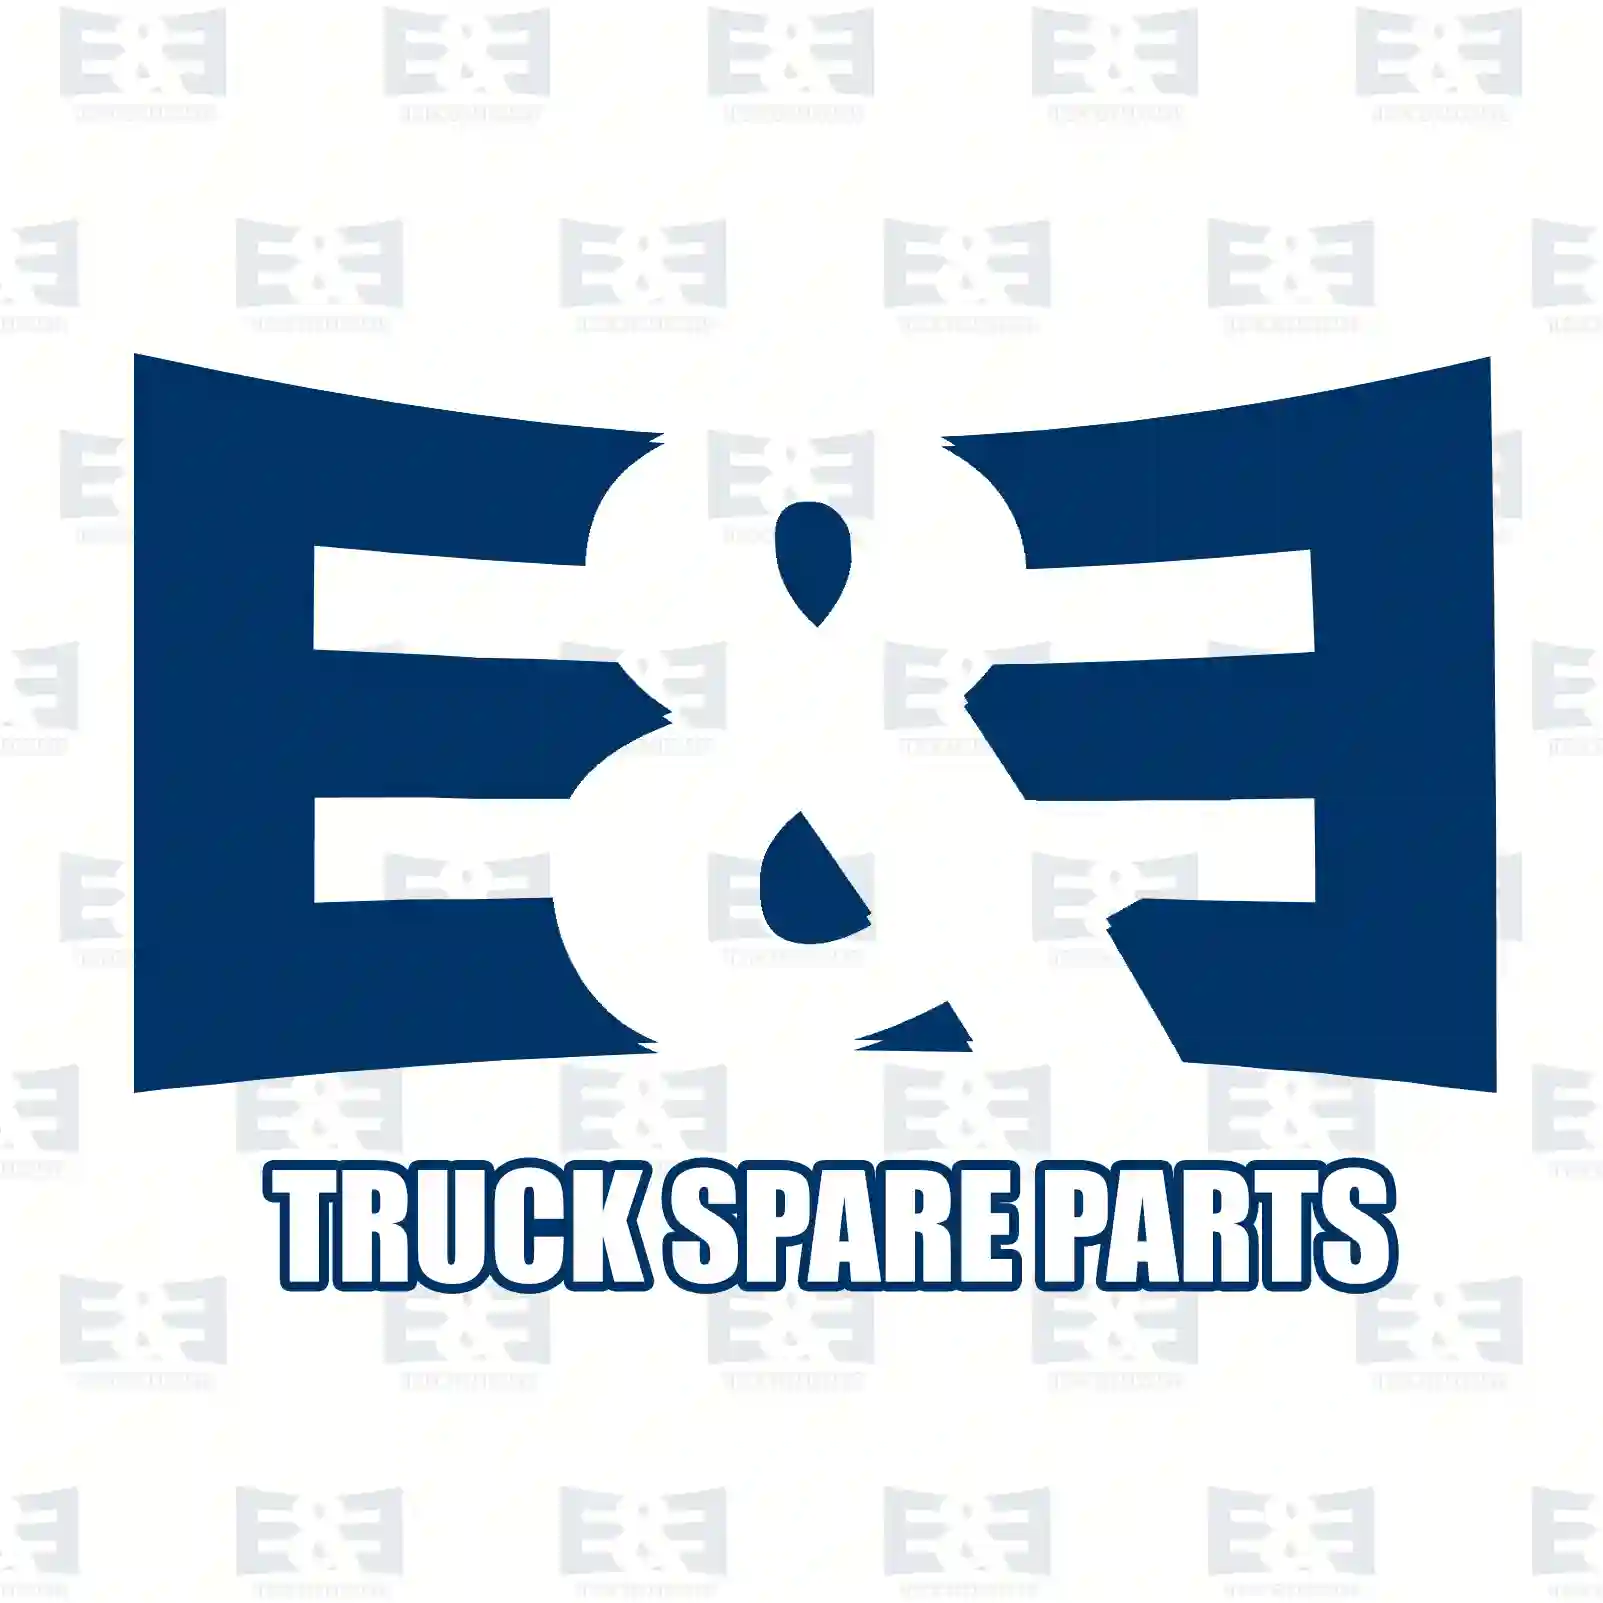 License plate lamp, 2E2297032, 6350AX, 735430904, 71778737, 6350AX ||  2E2297032 E&E Truck Spare Parts | Truck Spare Parts, Auotomotive Spare Parts License plate lamp, 2E2297032, 6350AX, 735430904, 71778737, 6350AX ||  2E2297032 E&E Truck Spare Parts | Truck Spare Parts, Auotomotive Spare Parts